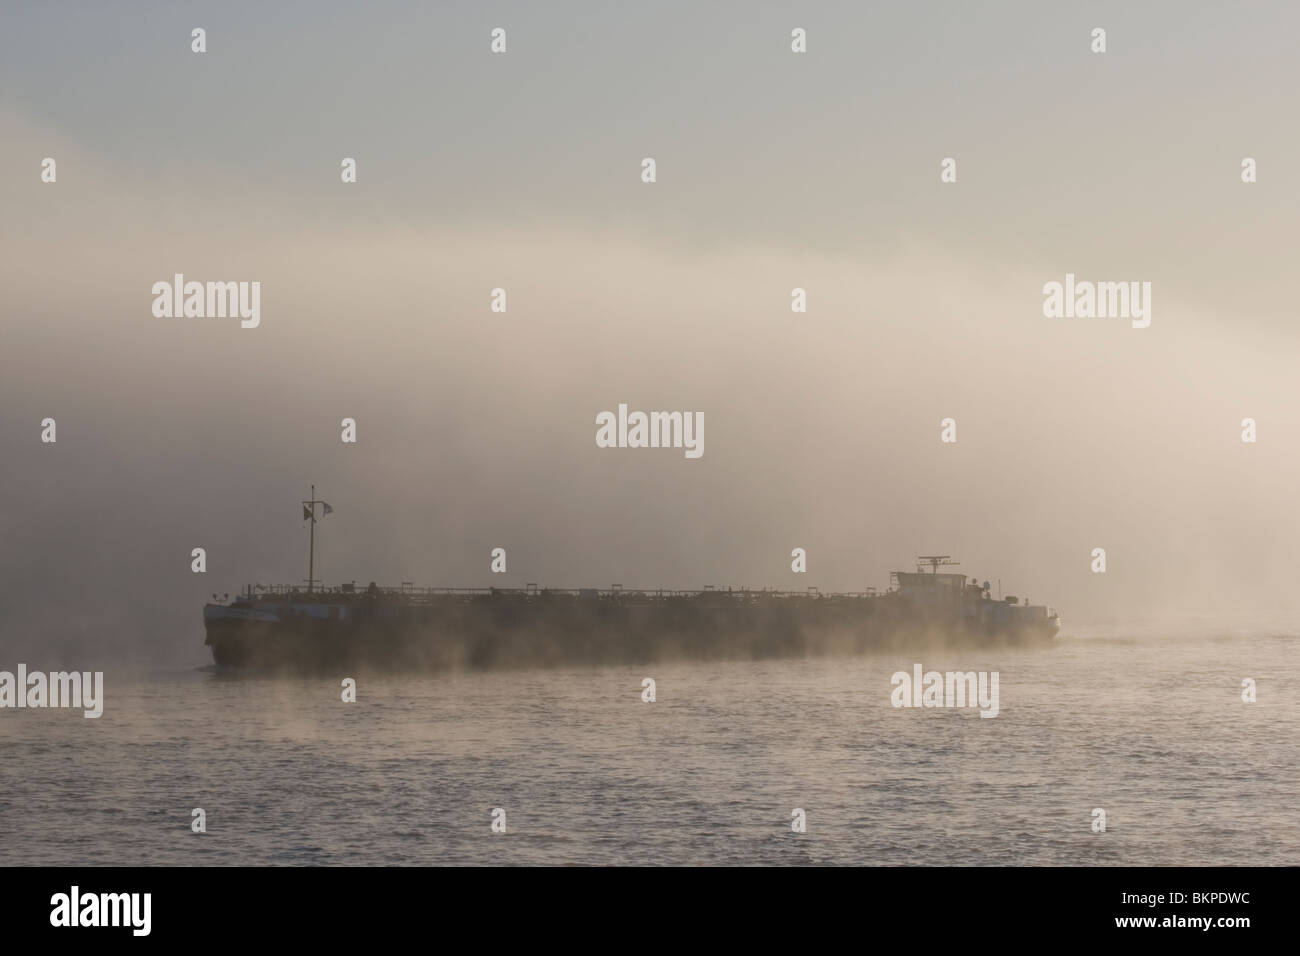 Sfeervolle mistige vroege morgen aan de Waal bij Nijmegen met rijnaak, Scenic eary morning at the Waal with fog and boat Stock Photo